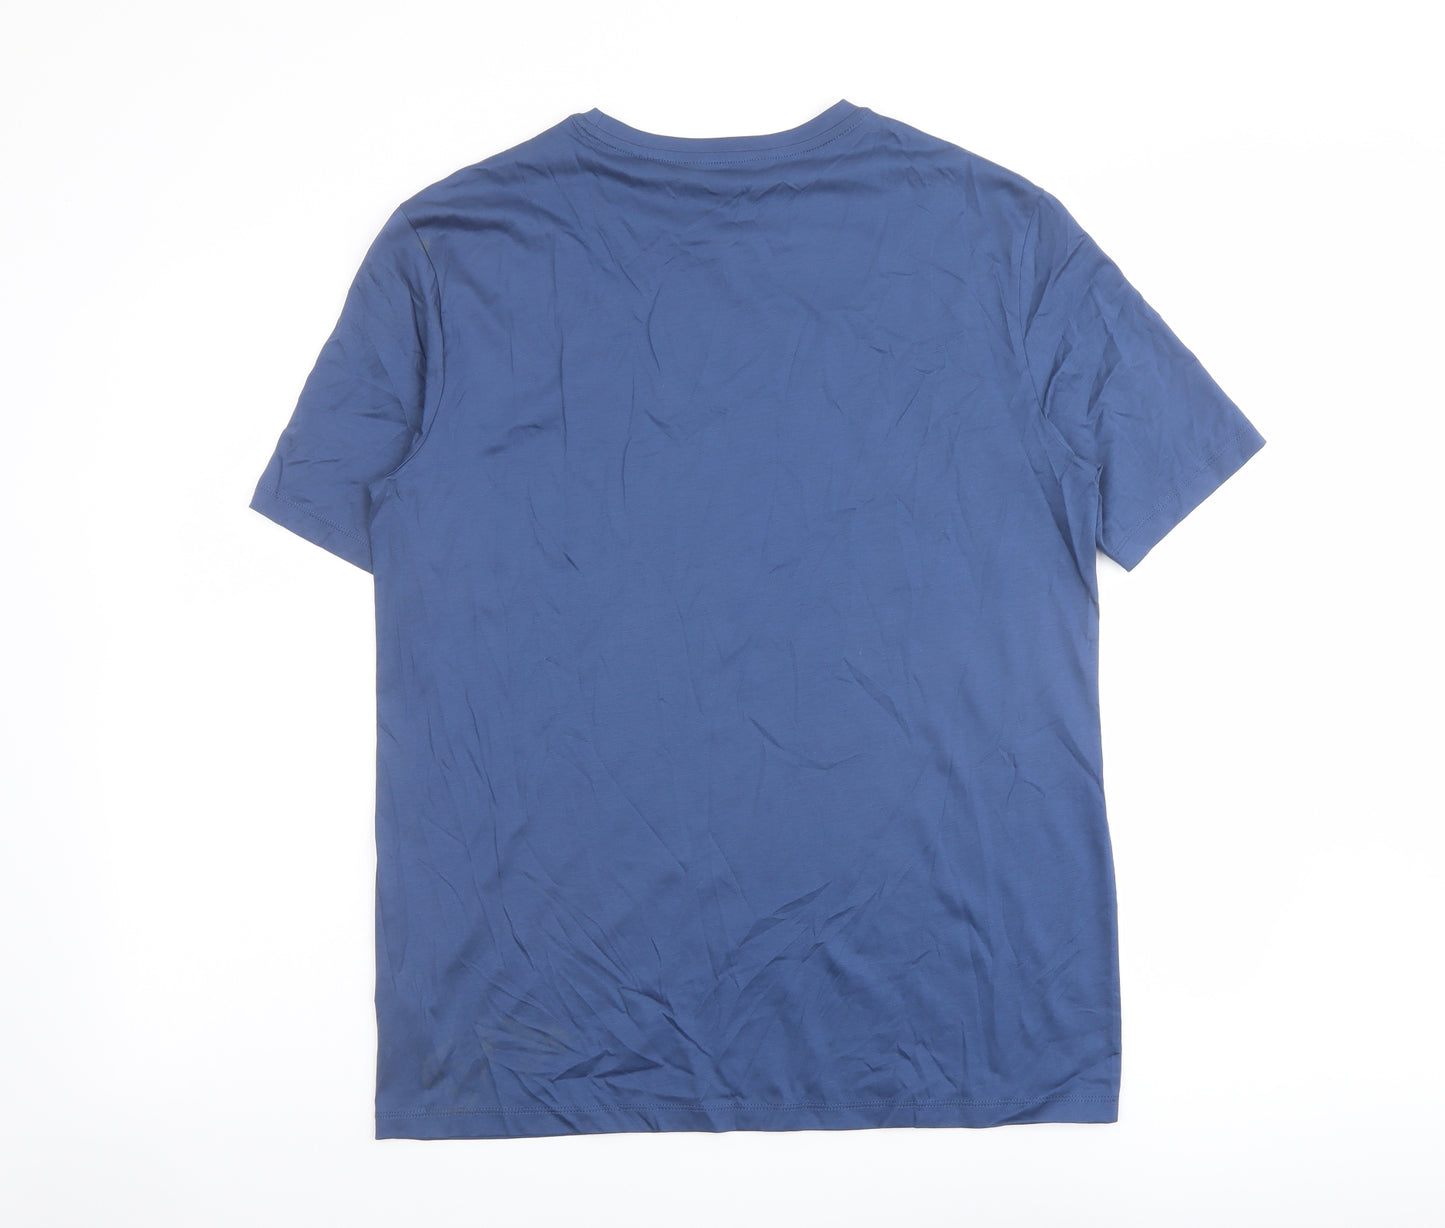 Autograph Mens Blue Cotton T-Shirt Size M Crew Neck